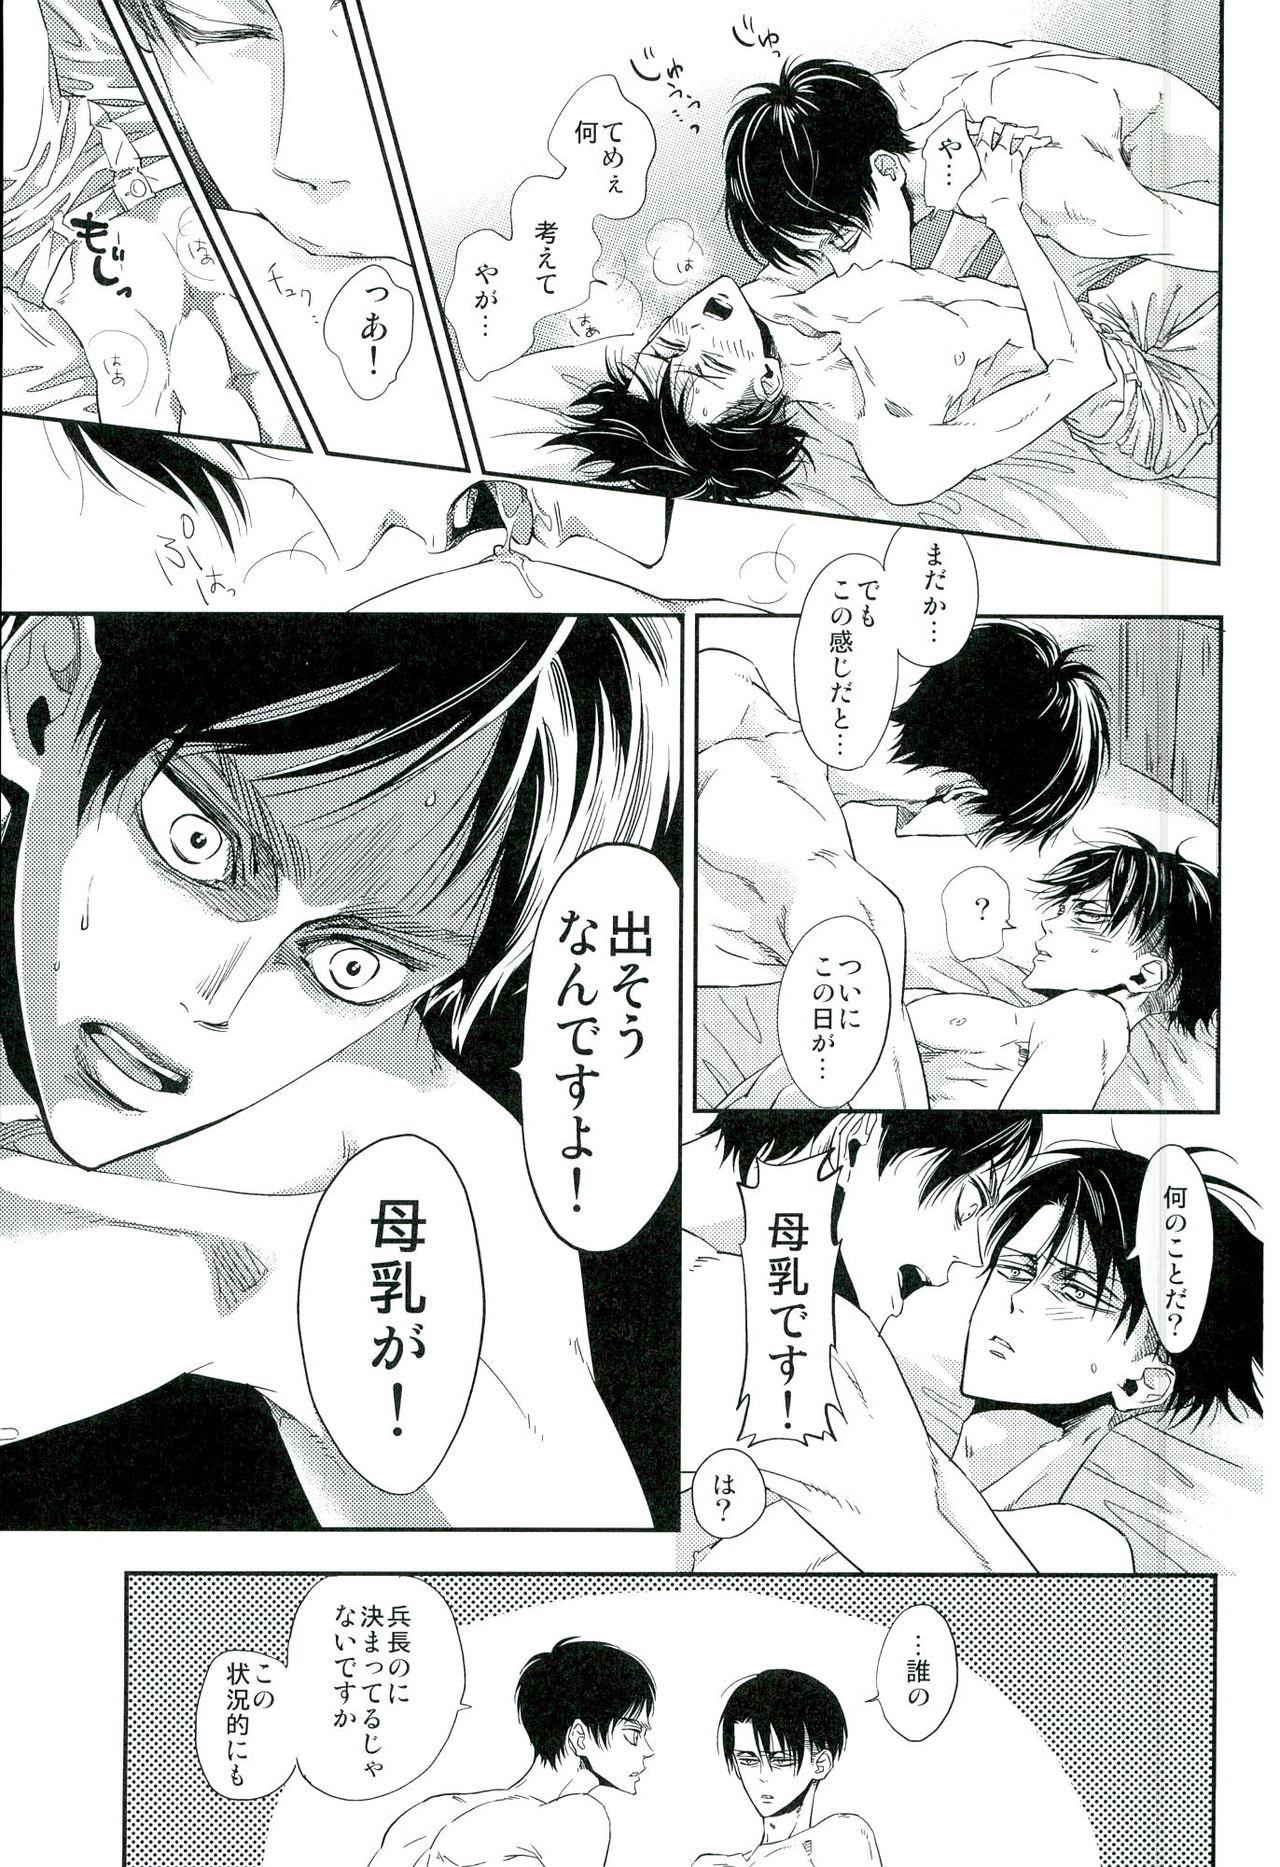 Closeup 兵長のおっぱいから母乳が出るところが見たい! - Shingeki no kyojin Gay Blondhair - Page 4